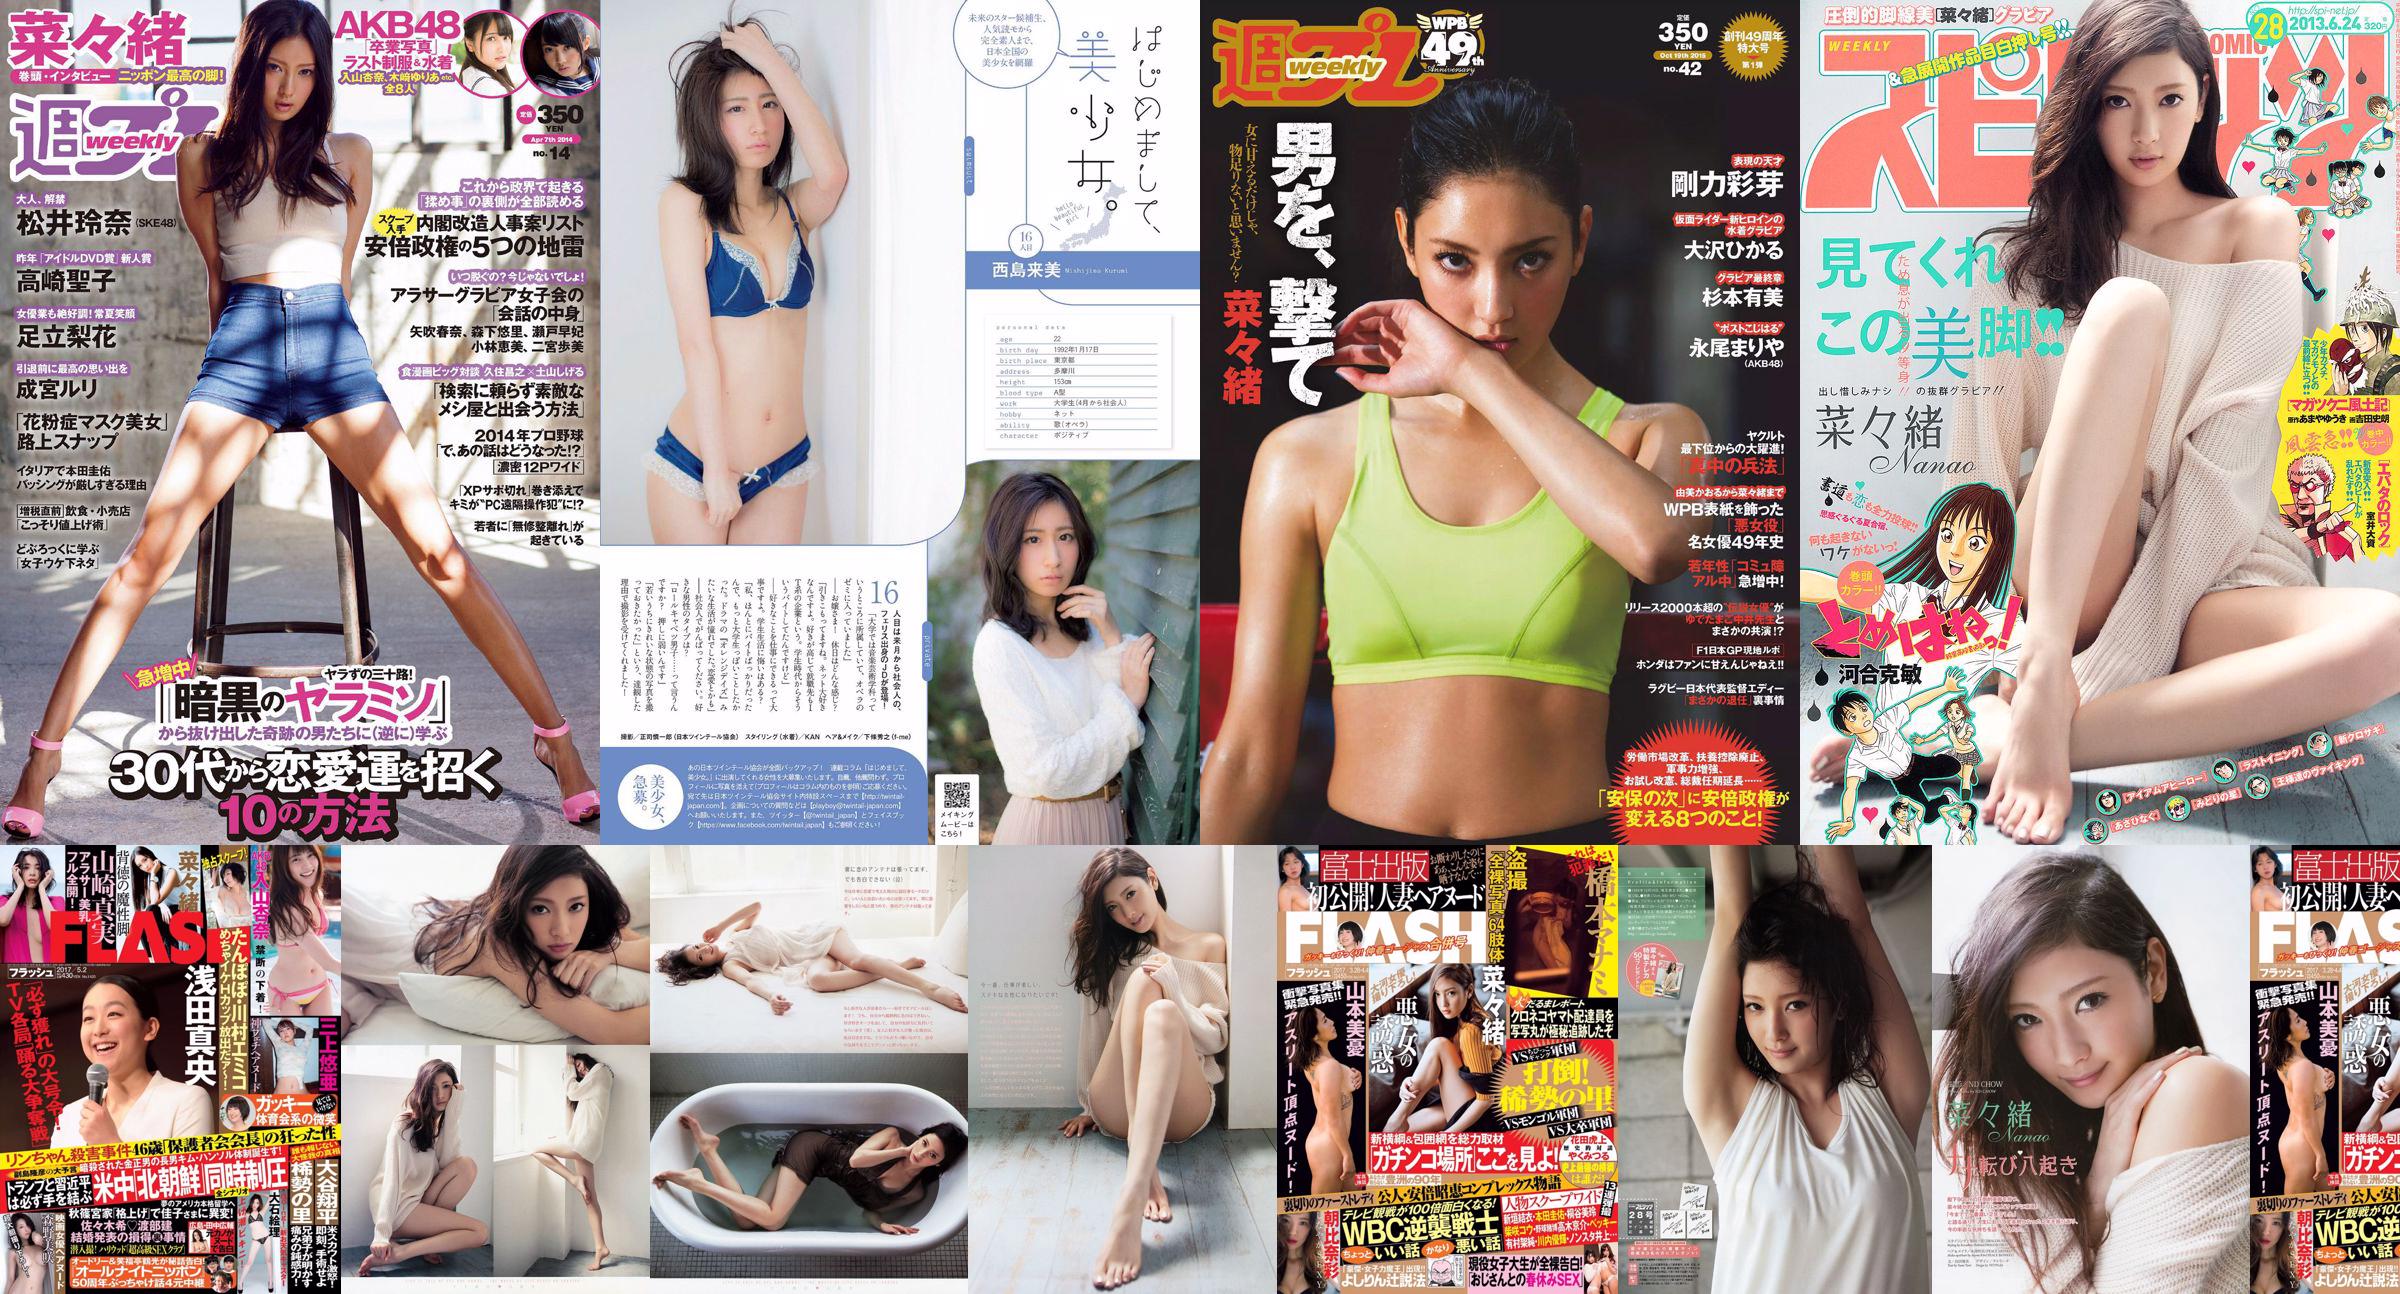 Nanao Rena Matsui Rika Adachi Natsuo Sawada Seiko Takasaki Nekomu Otogi Minami Kojima Ruri Narumiya [Weekly Playboy] 2014 No.14 Photo No.8854c7 Page 7